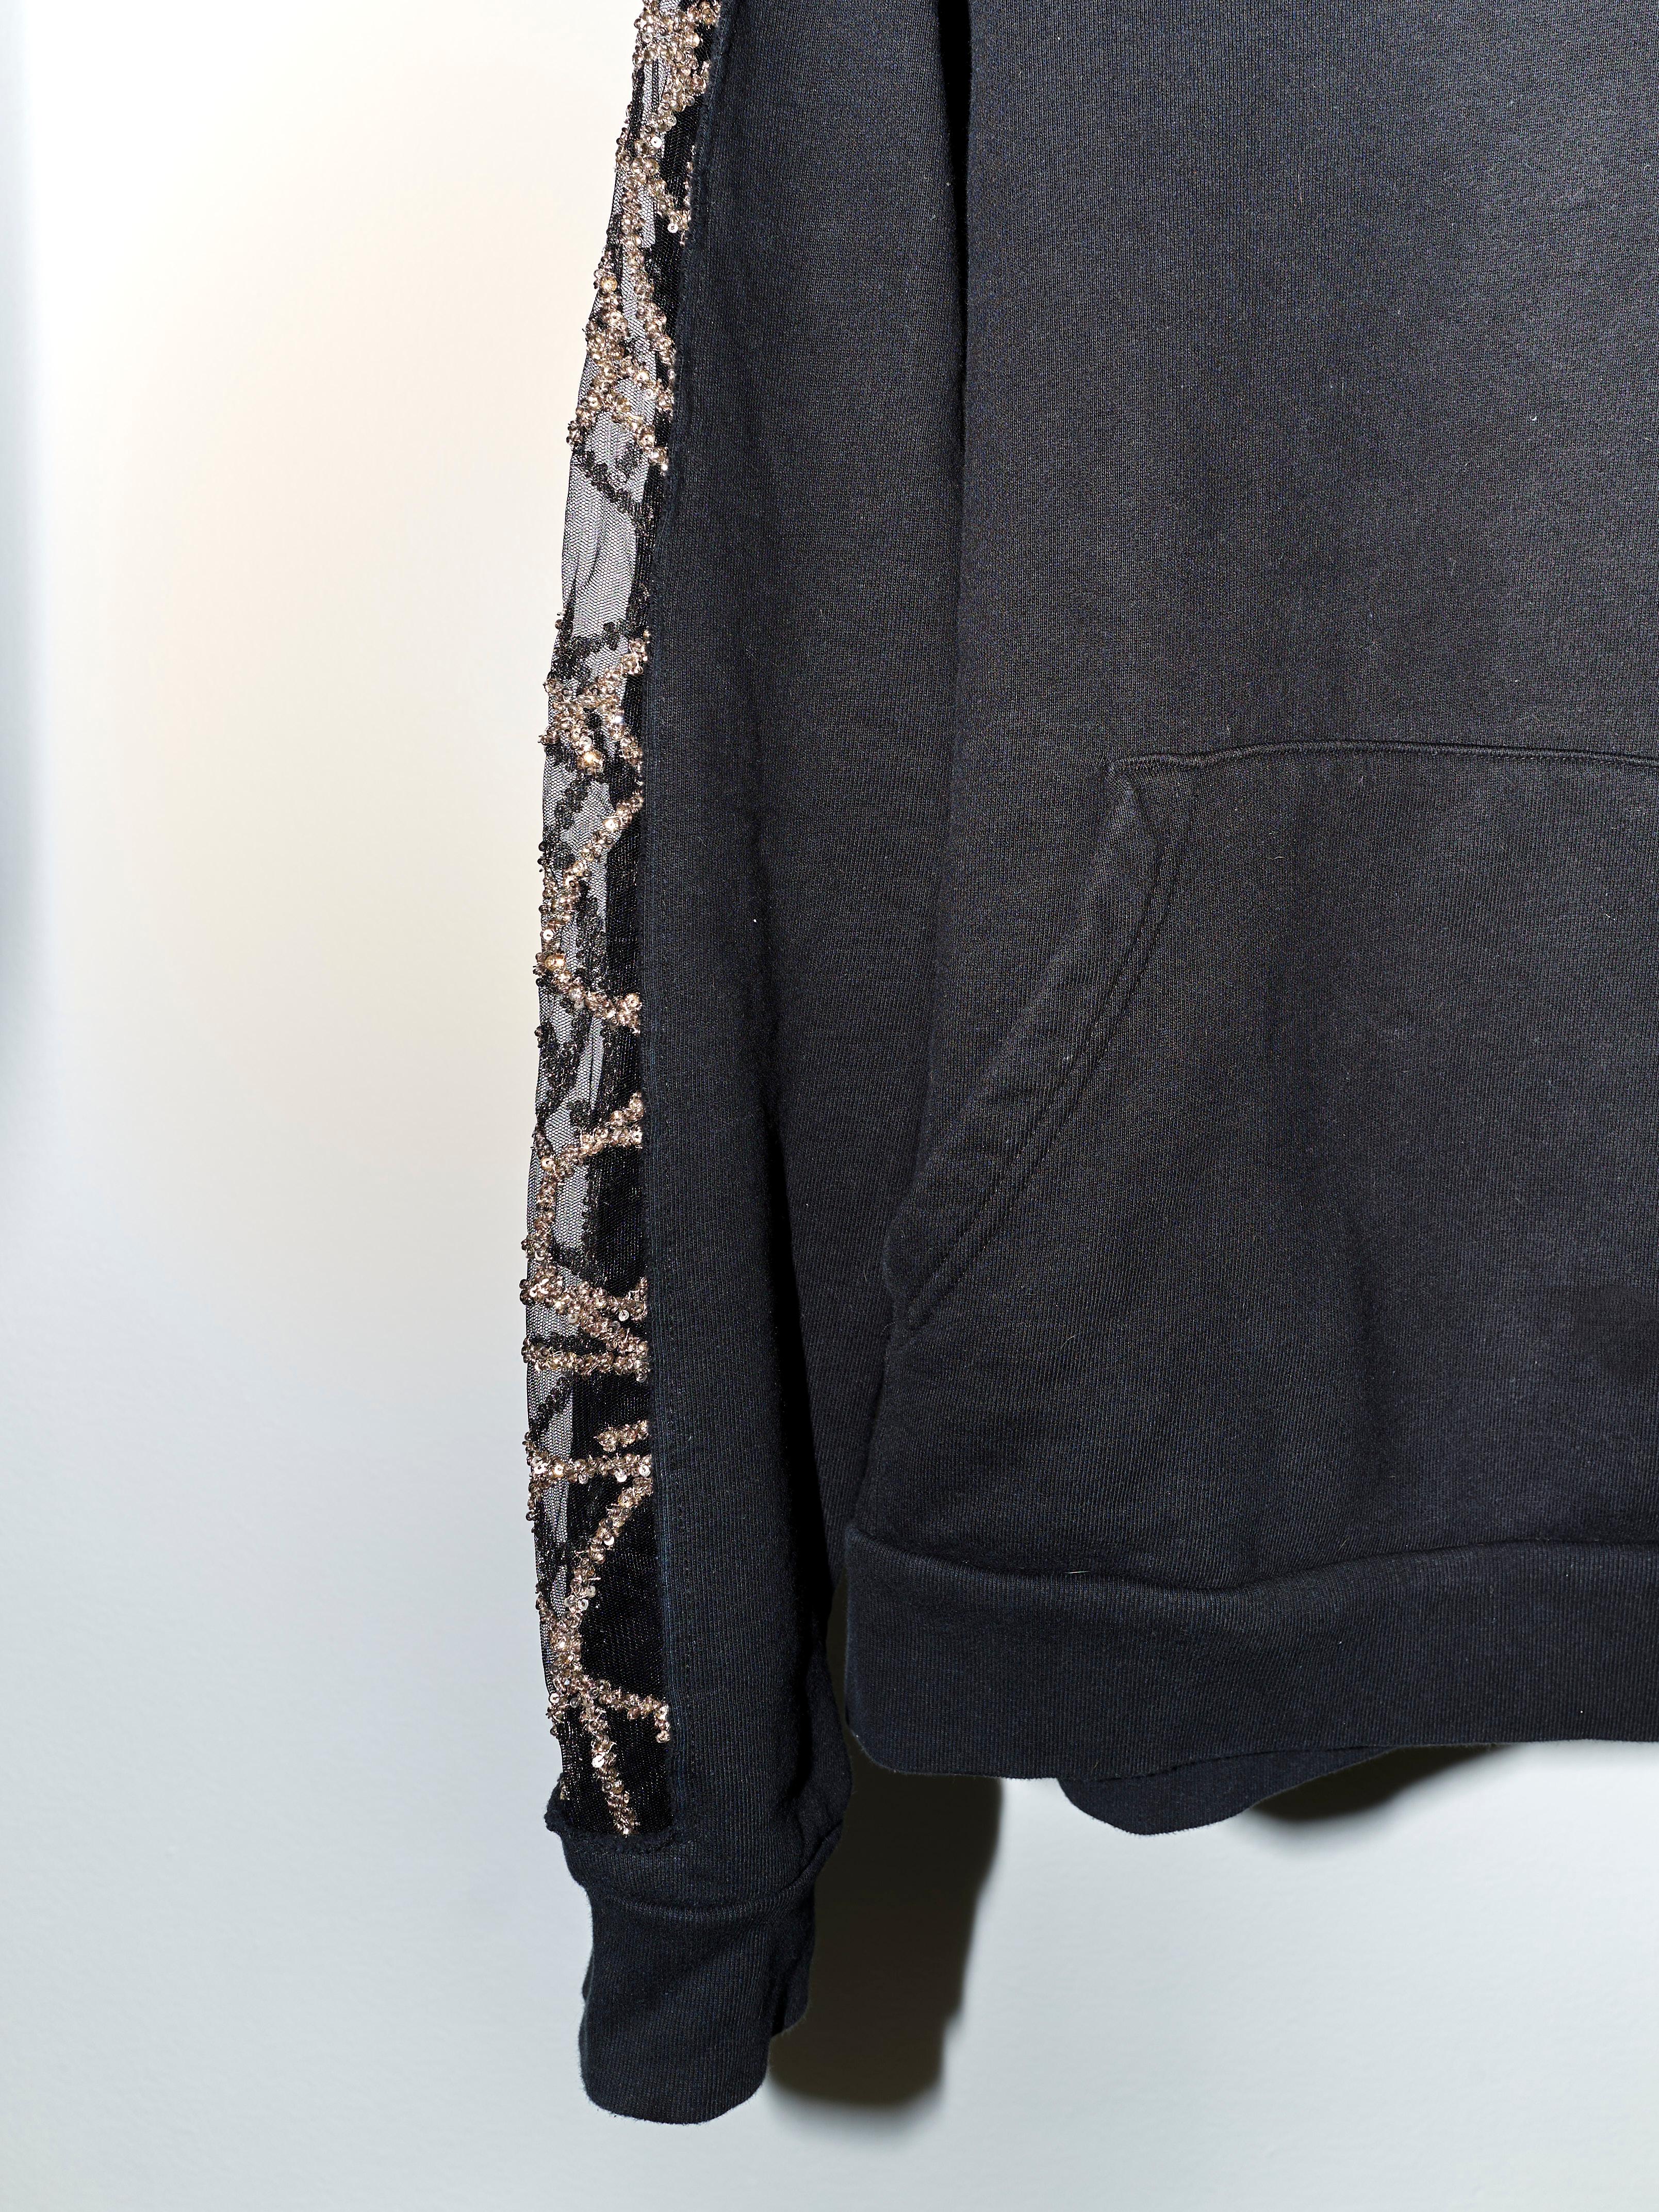 Black Hoodie Sweatshirt Transparent Sheer Mesh Chrystal Embroidery J Dauphin For Sale 2